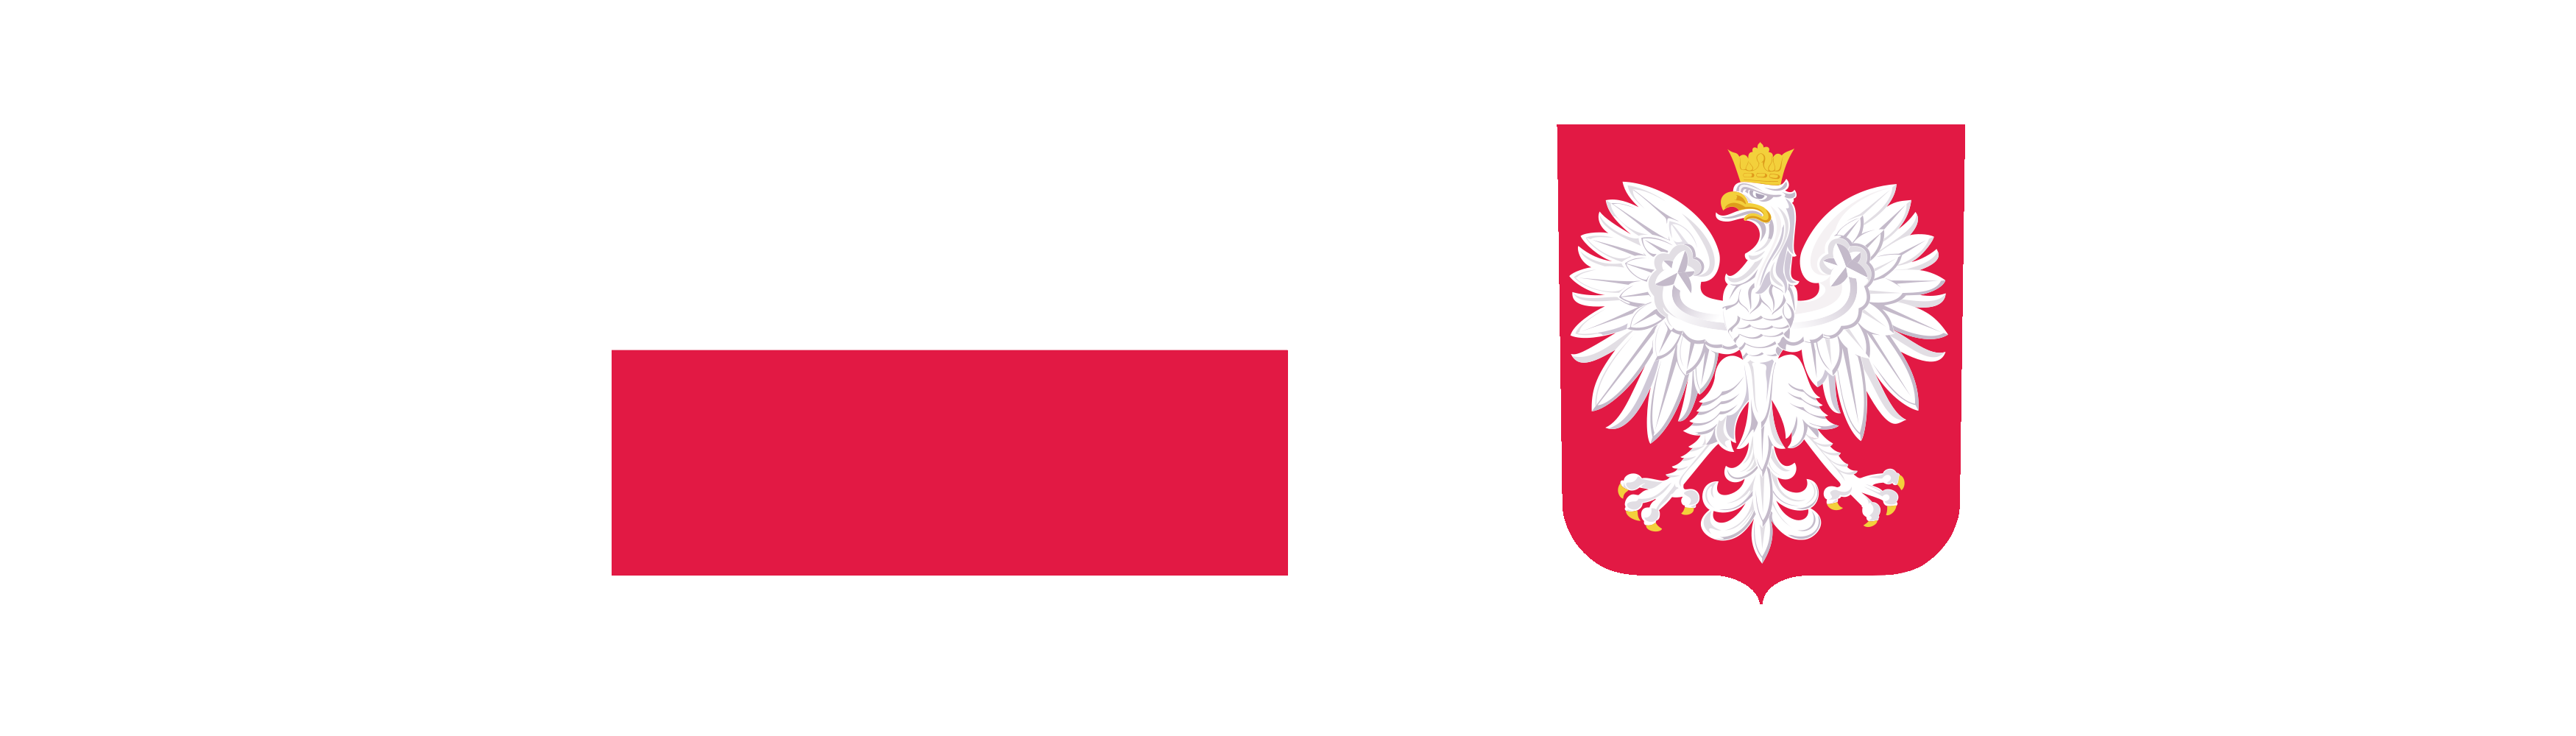 flaga Rzeczypospolitej Polskiej wraz z wizerunkiem godła Rzeczypospolitej Polskiej